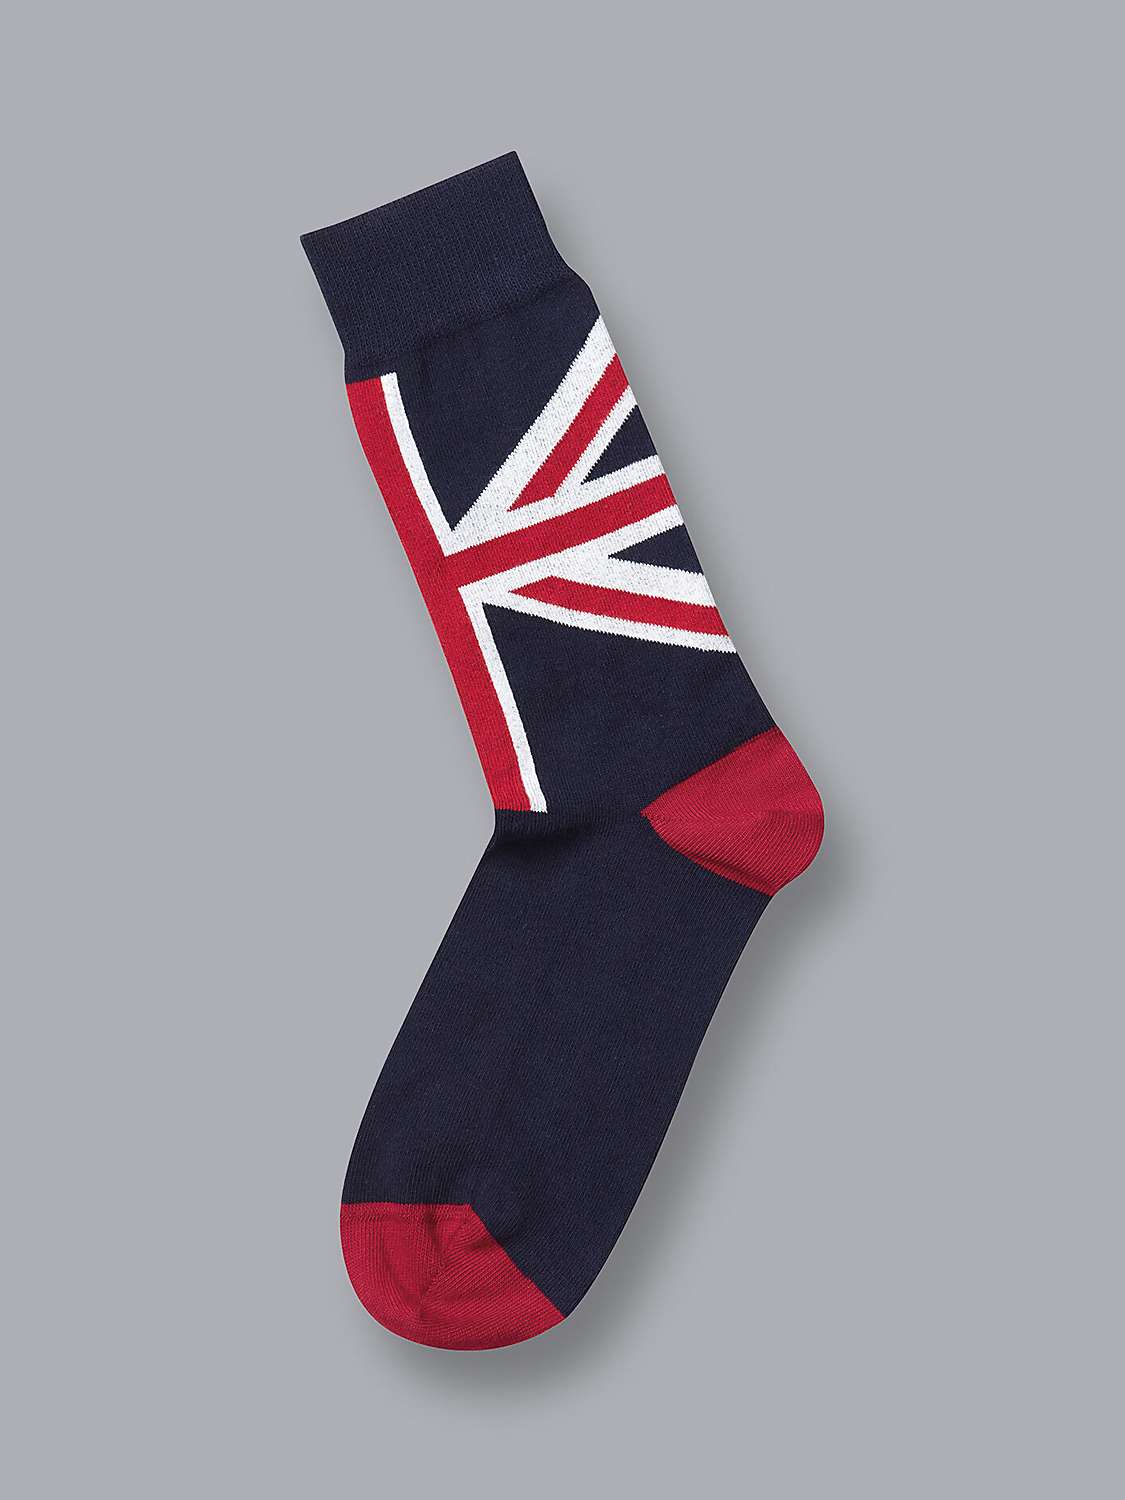 Buy Charles Tyrwhitt Union Jack Socks, Navy Online at johnlewis.com